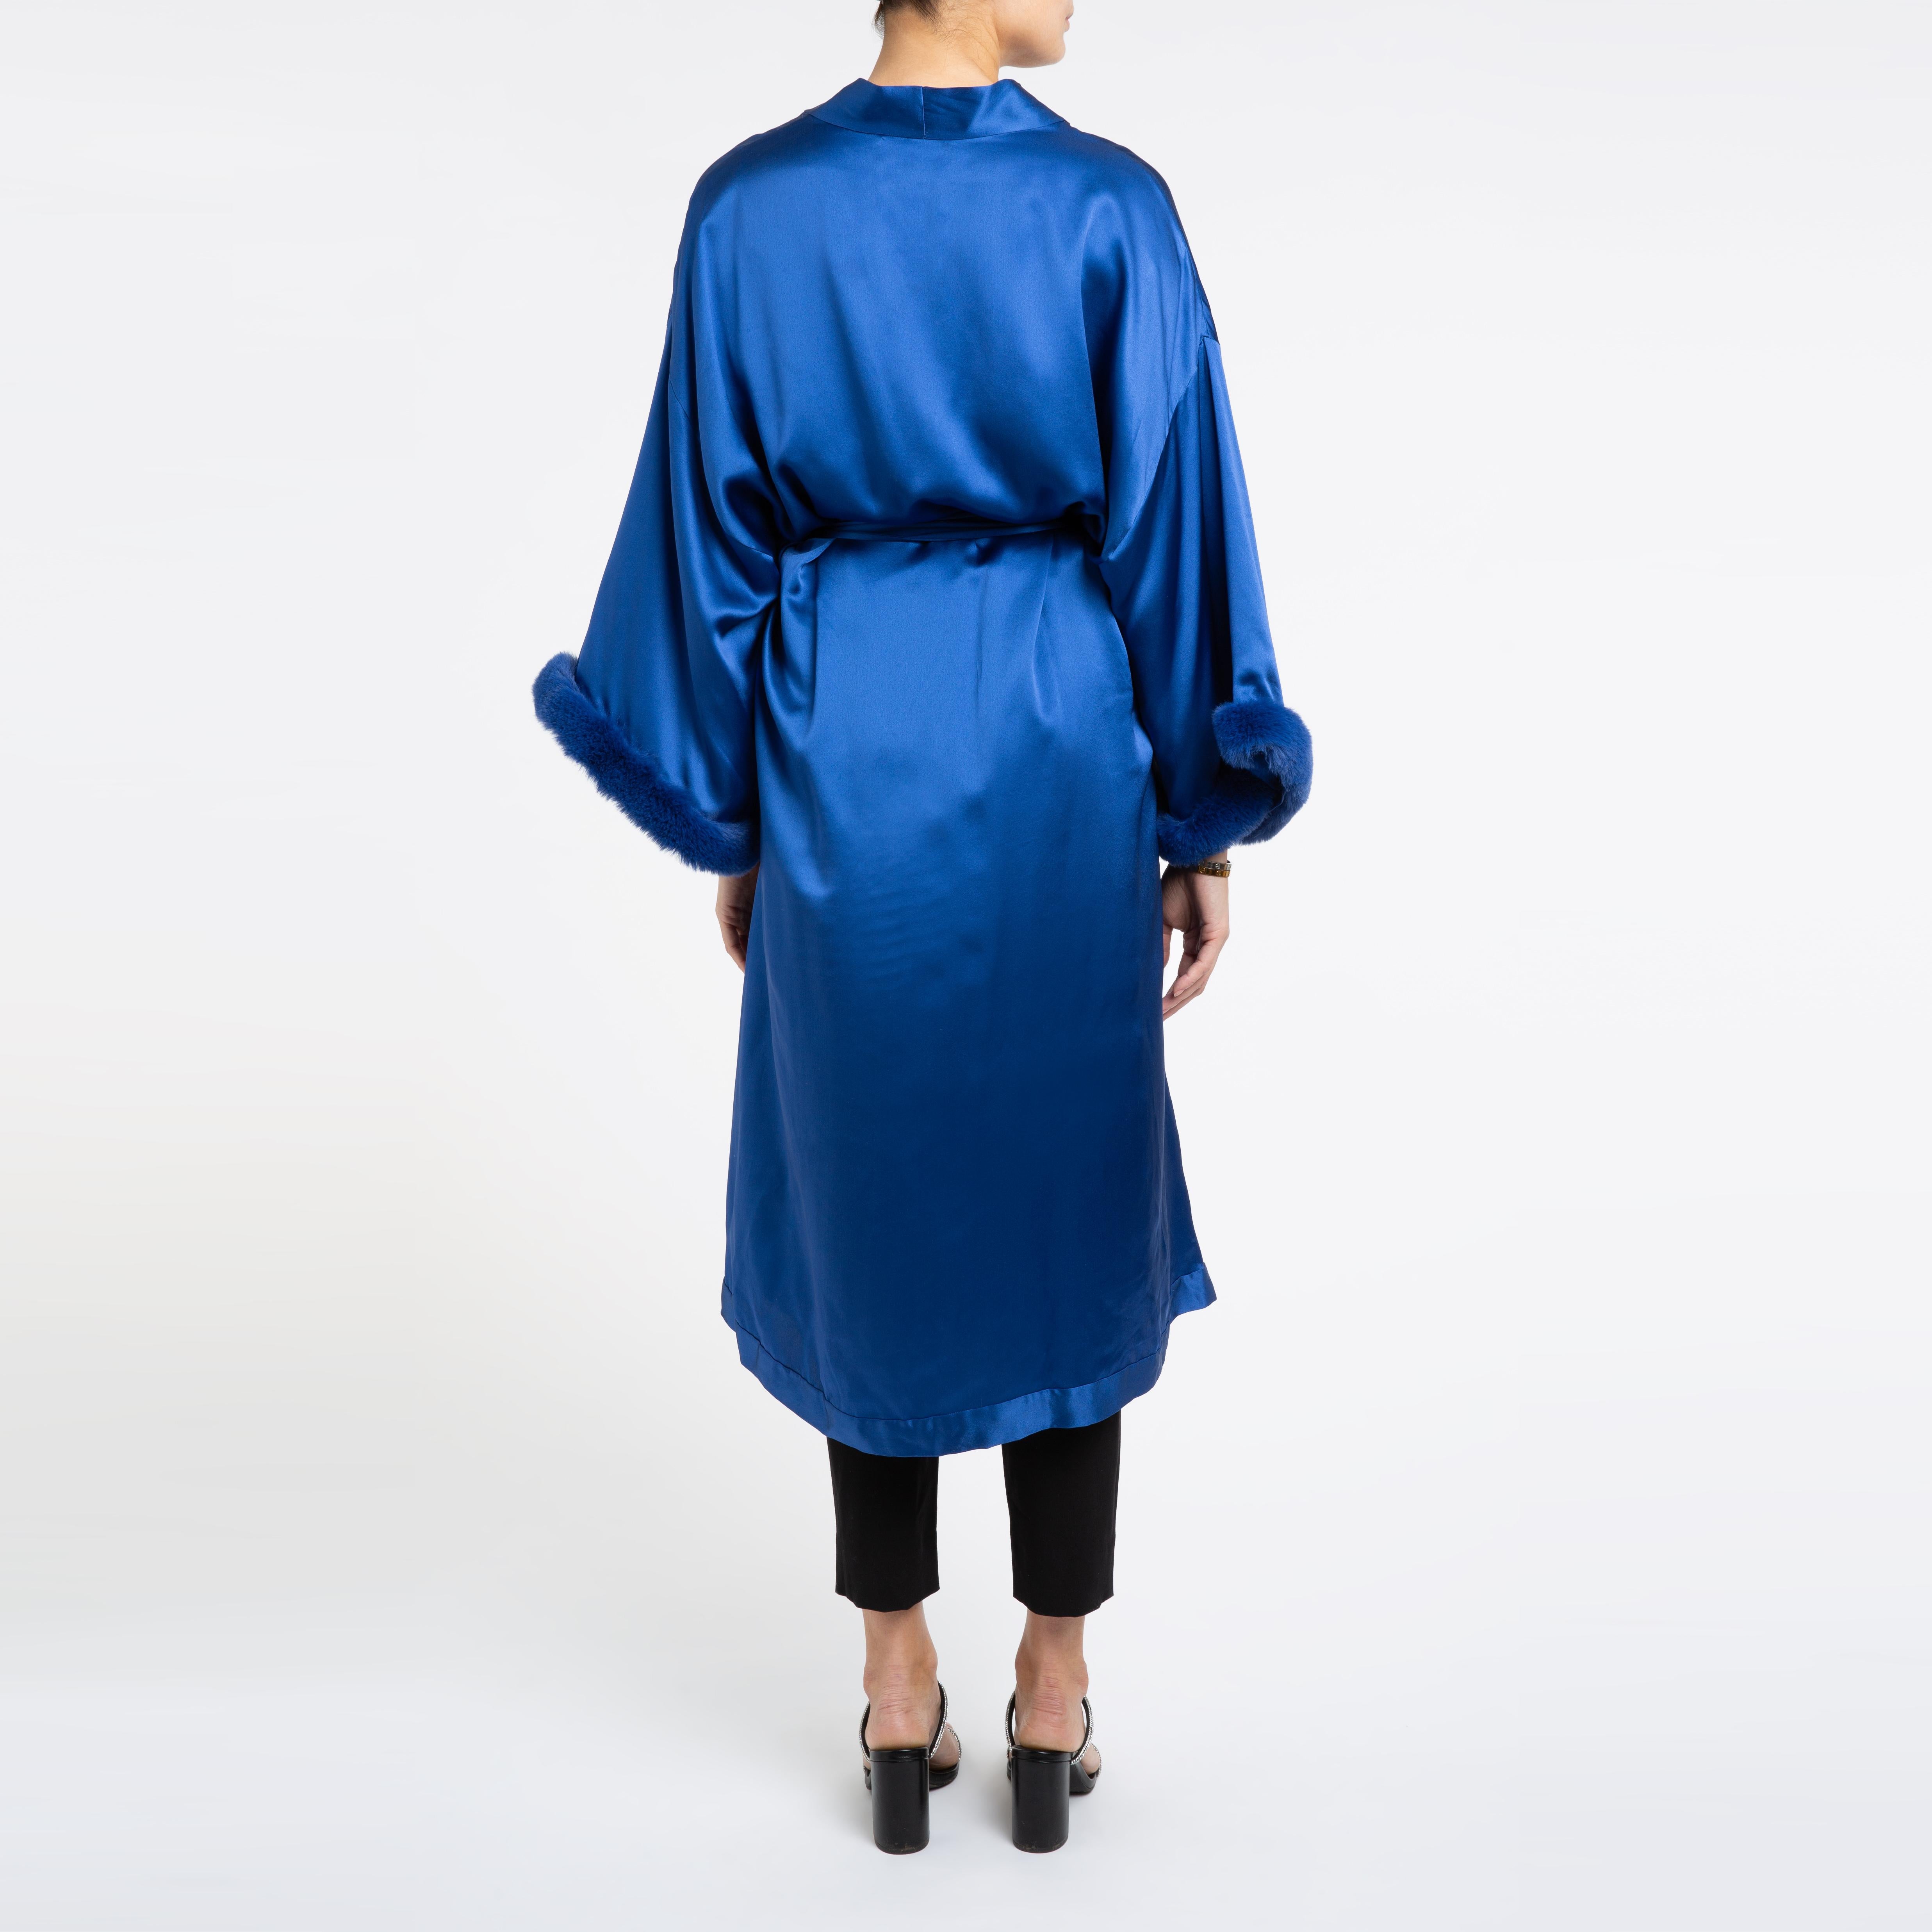 Women's Verheyen London Blue Kimono in Italian Silk Satin with Faux Fur - One Size 